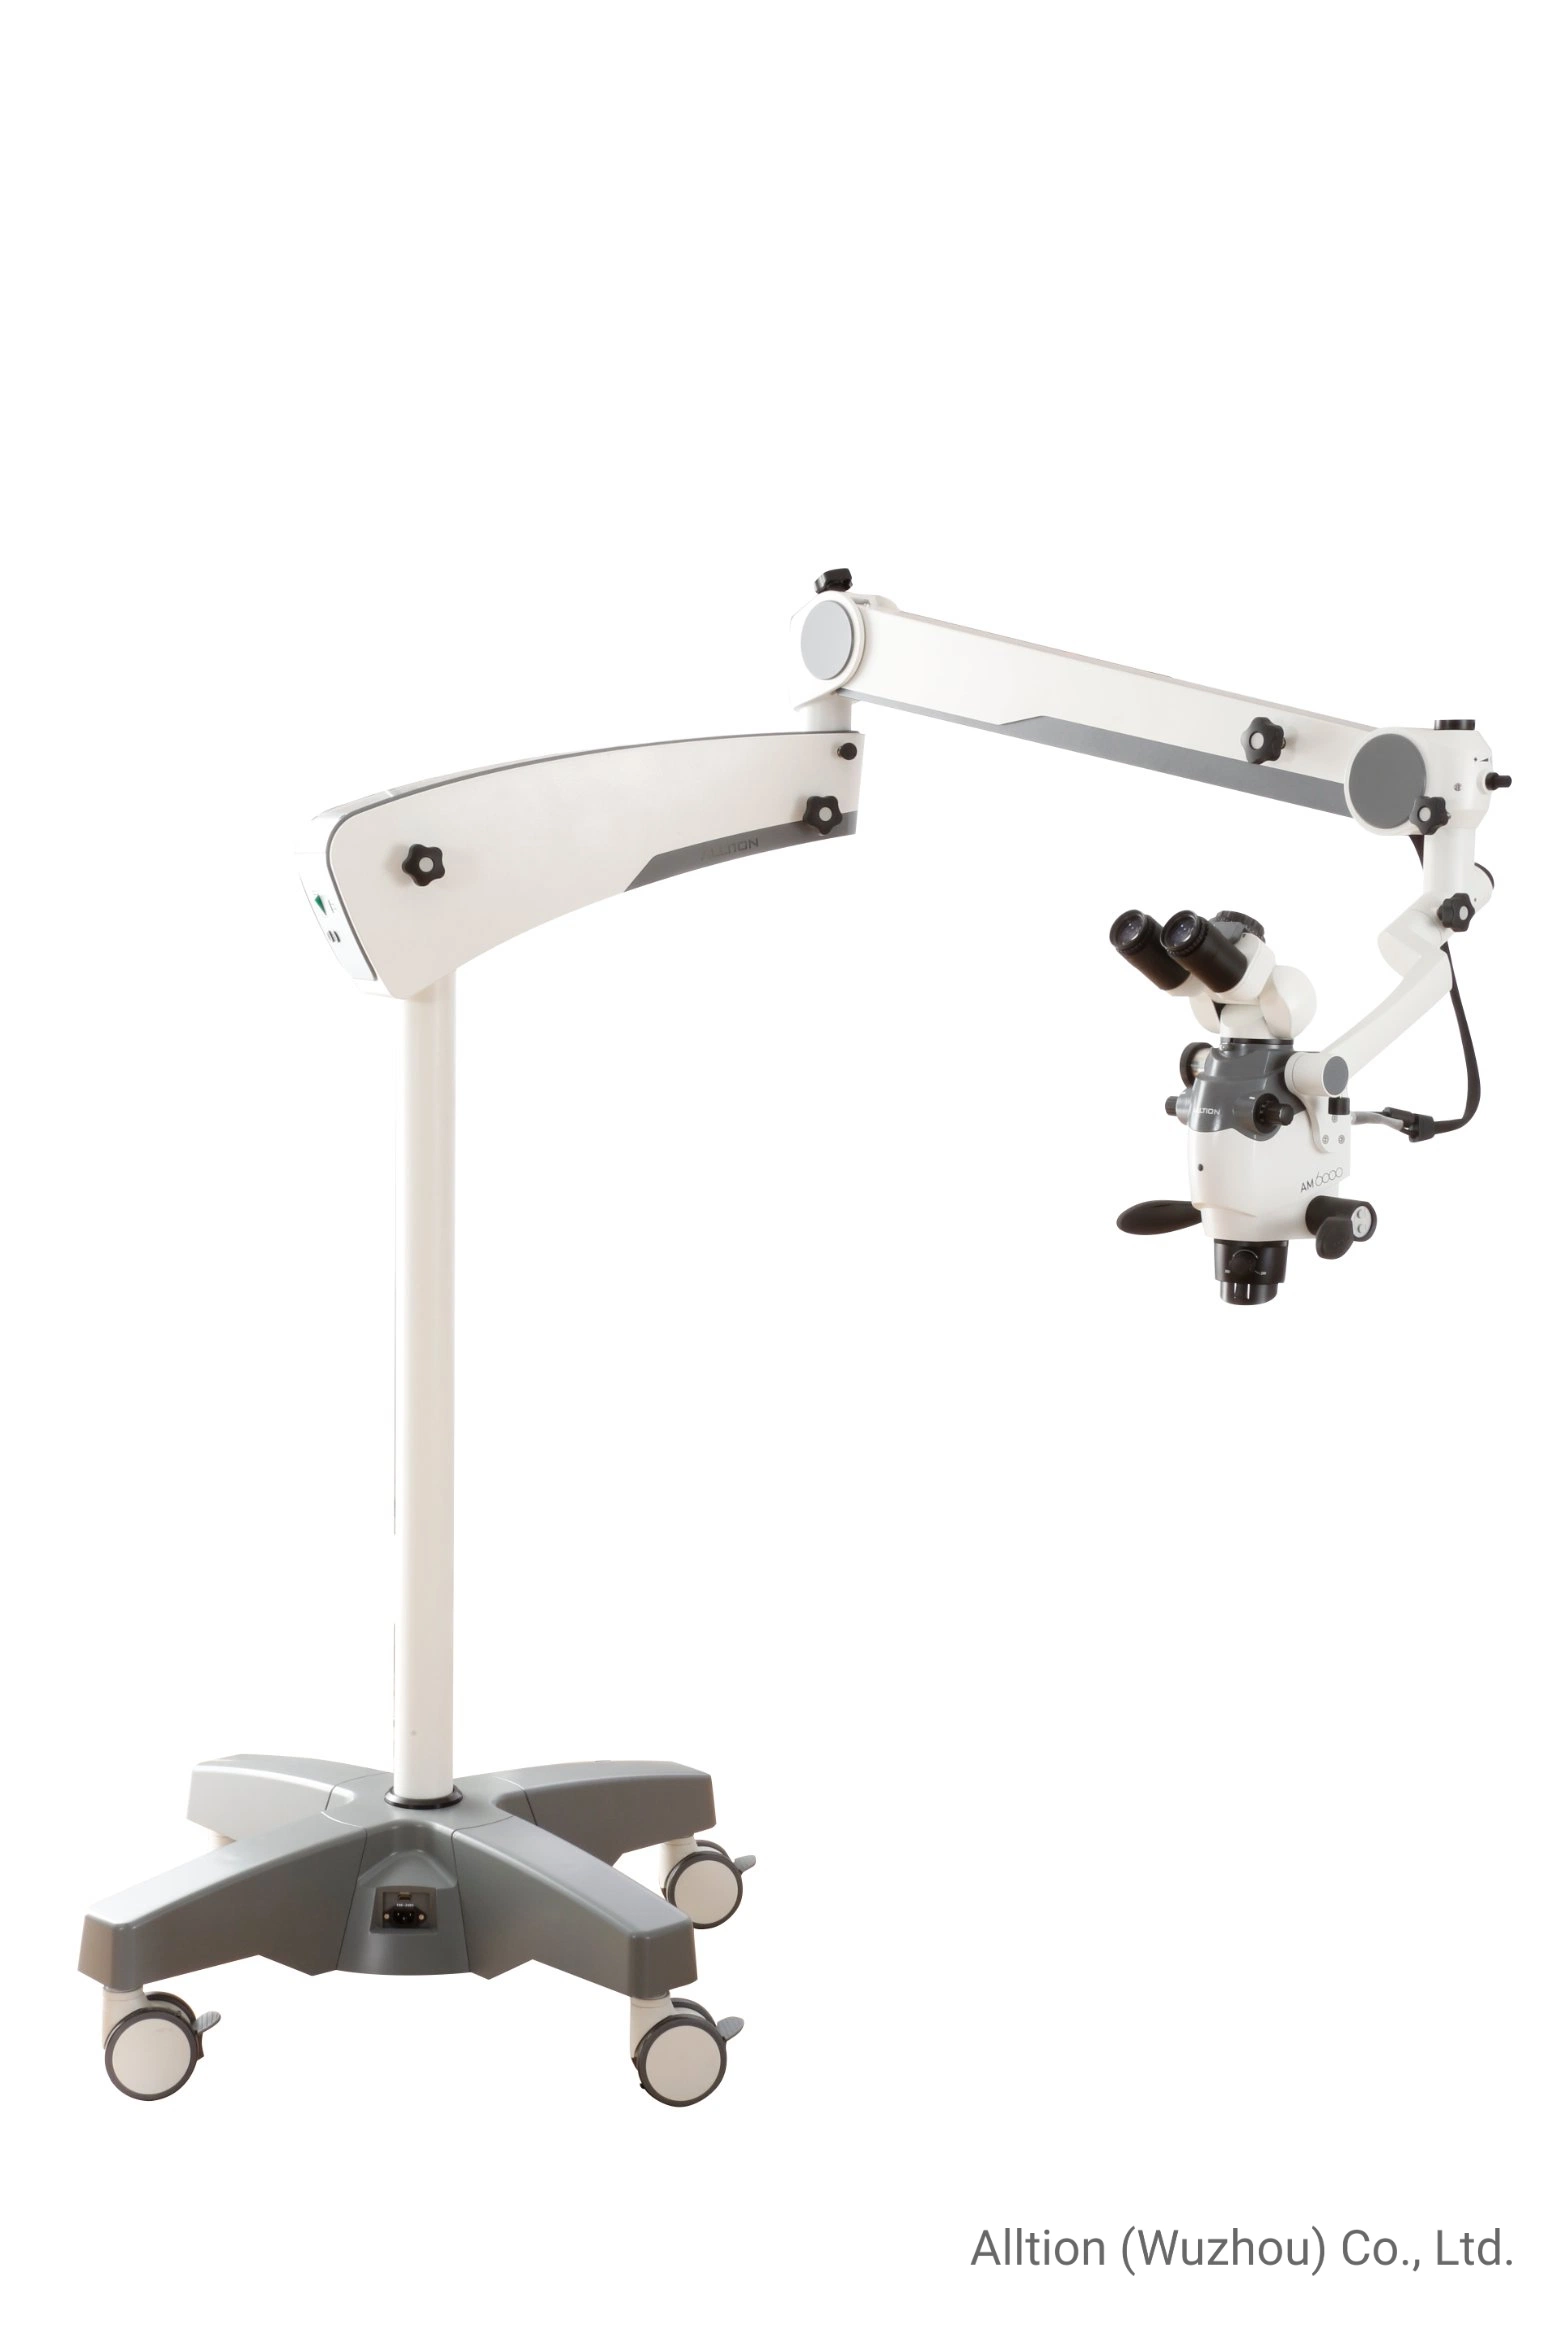 Am-6000 microscopio de zoom para cirugía quirúrgica operación en Ent Ortopedia Dental Cirugía de manos Neurocirugía Andrología y Urología P &amp; R Veterinaria